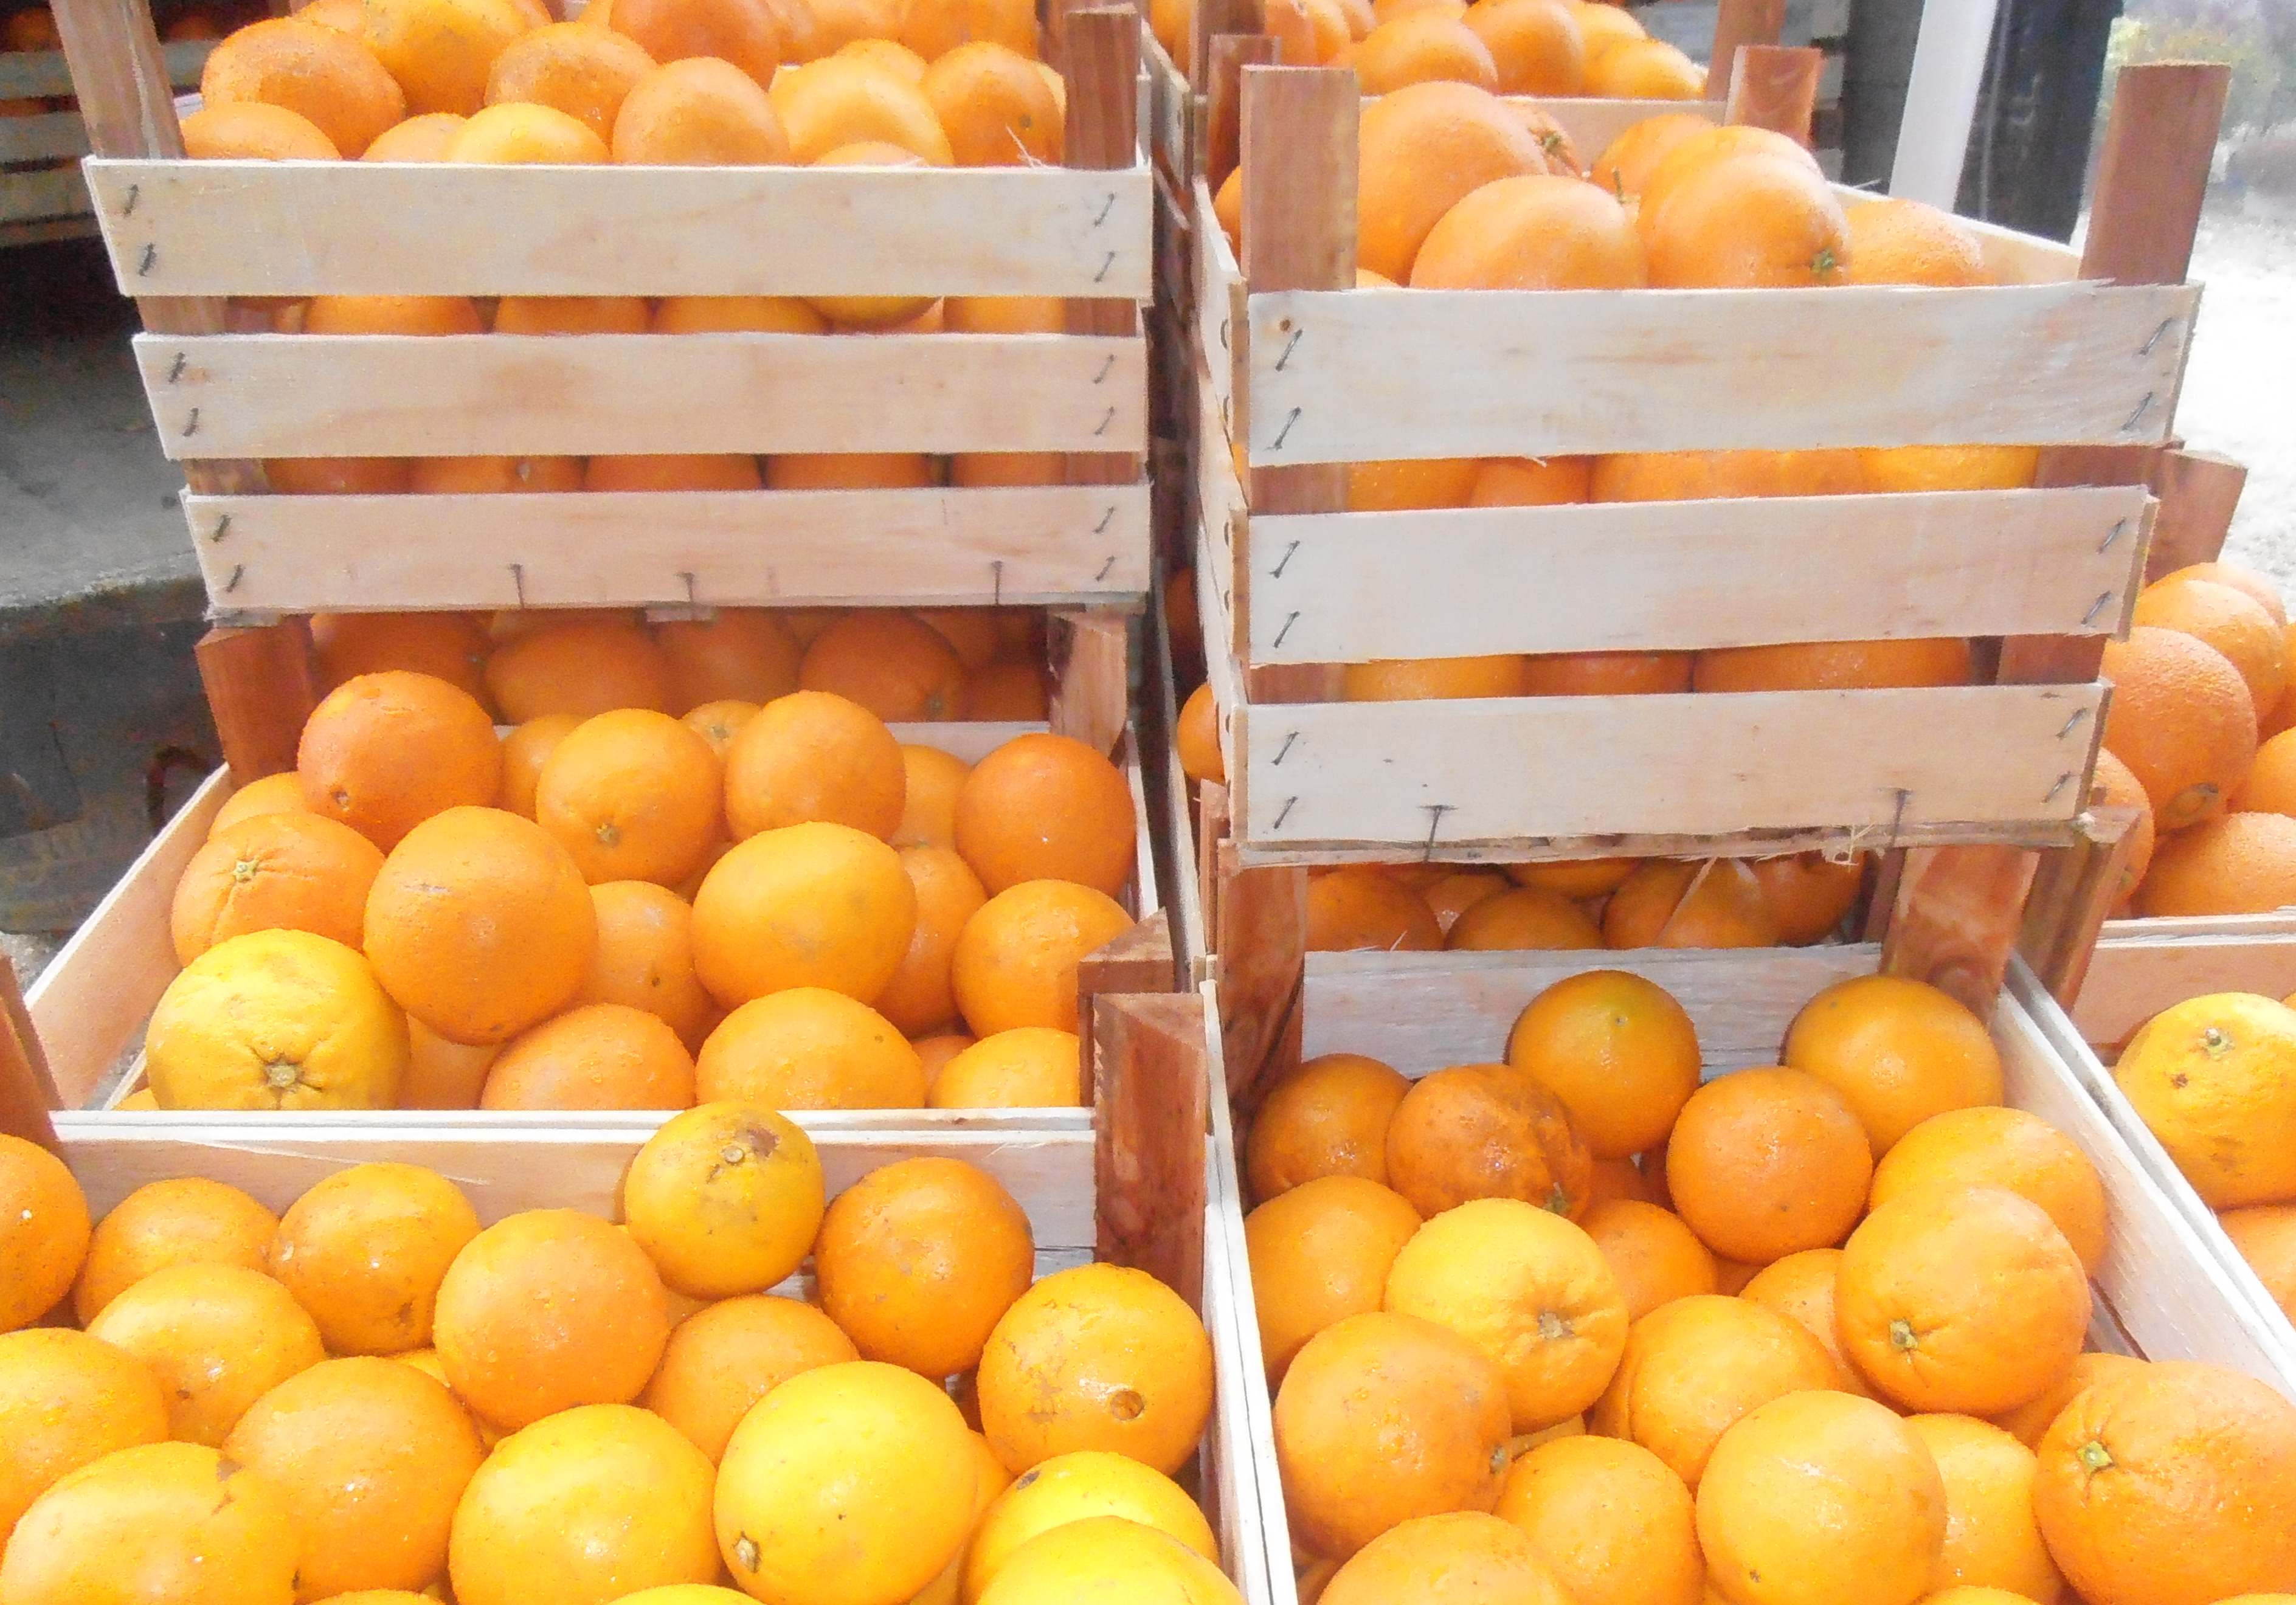 Crisi: Coldiretti, è strage di arance, si mobilitano gli agricoltori